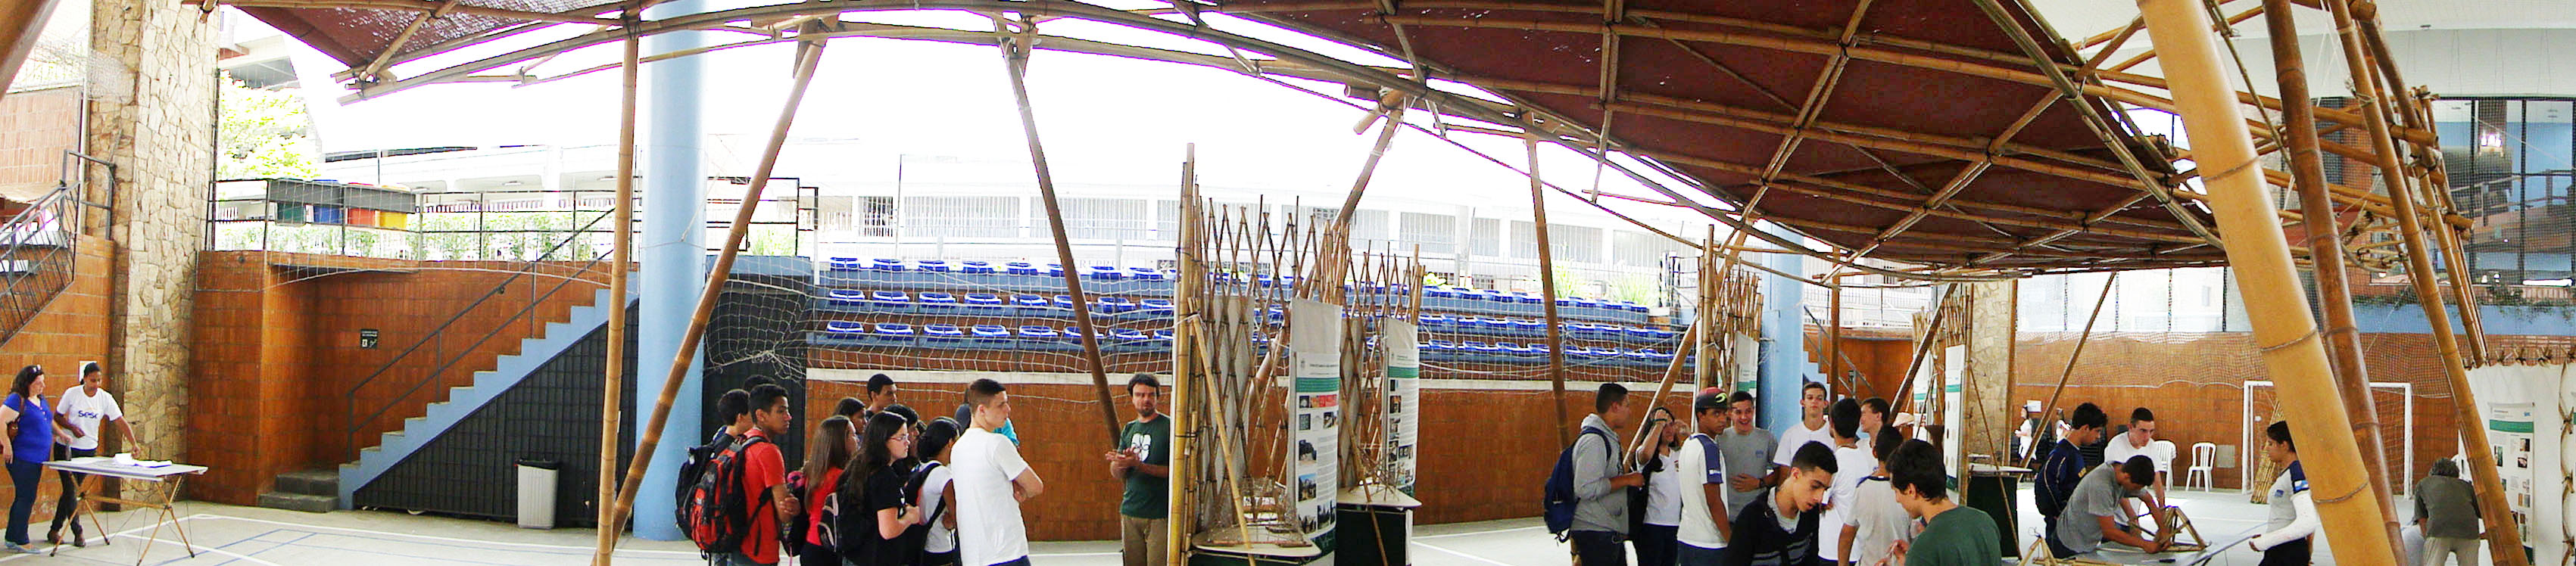 13-Exposição-Estruturas-de-Bambu-Sesc-Teresópolis.jpg